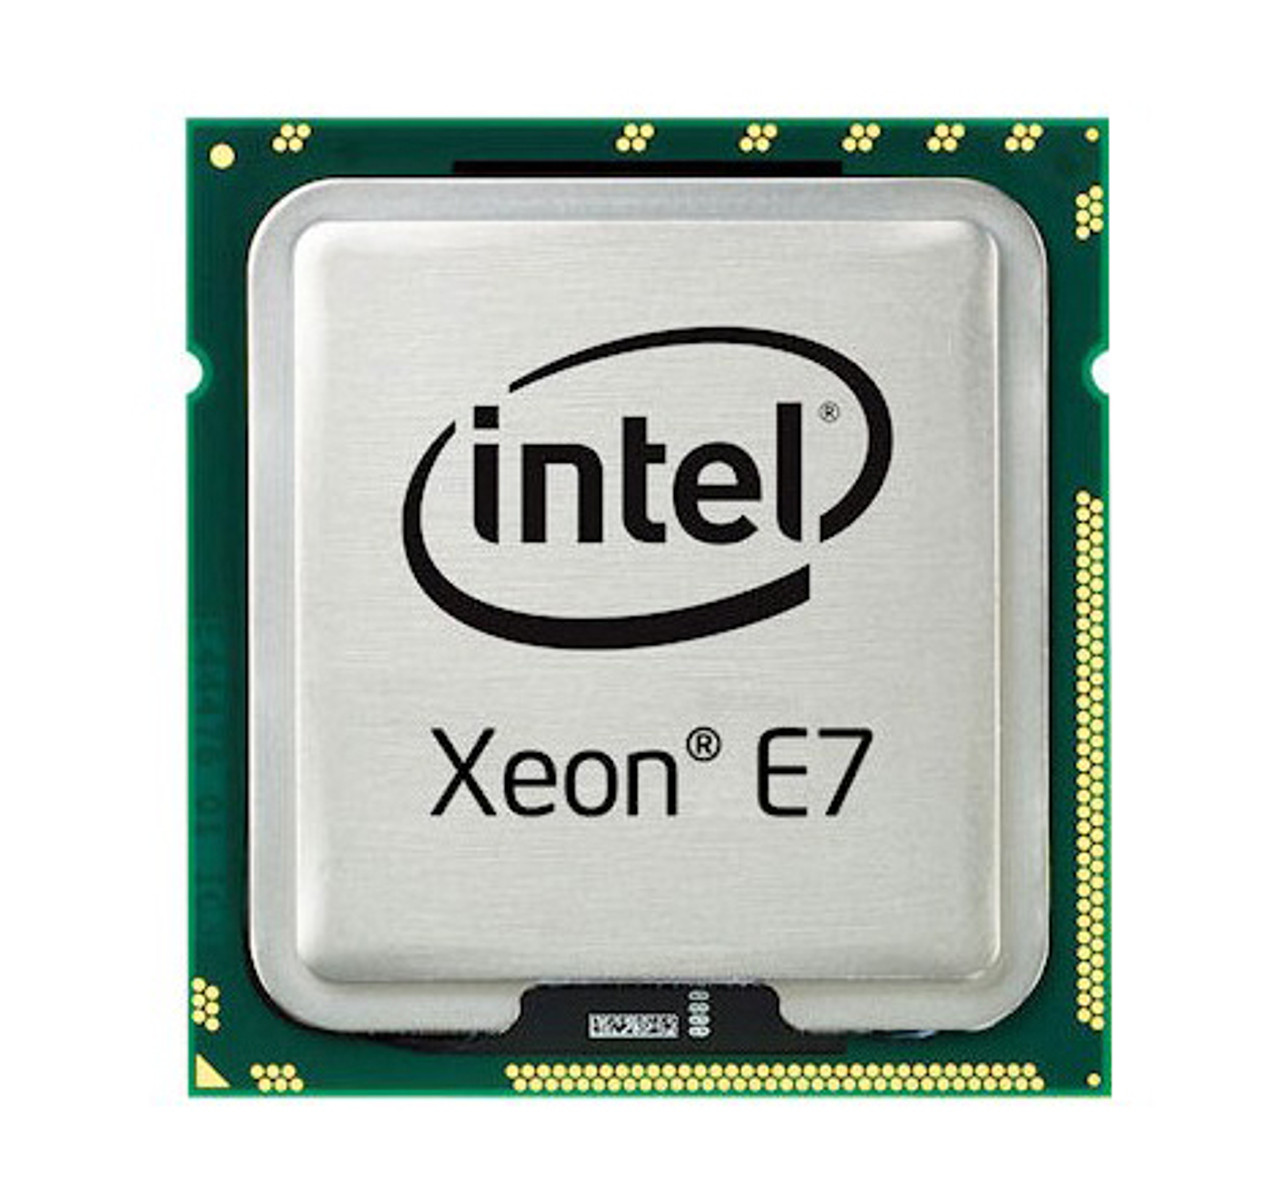 AT80615005787AB Intel Xeon E7-2830 8 Core 2.13GHz 6.40GT/s QPI 24MB L3 Cache Socket LGA1567 Processor